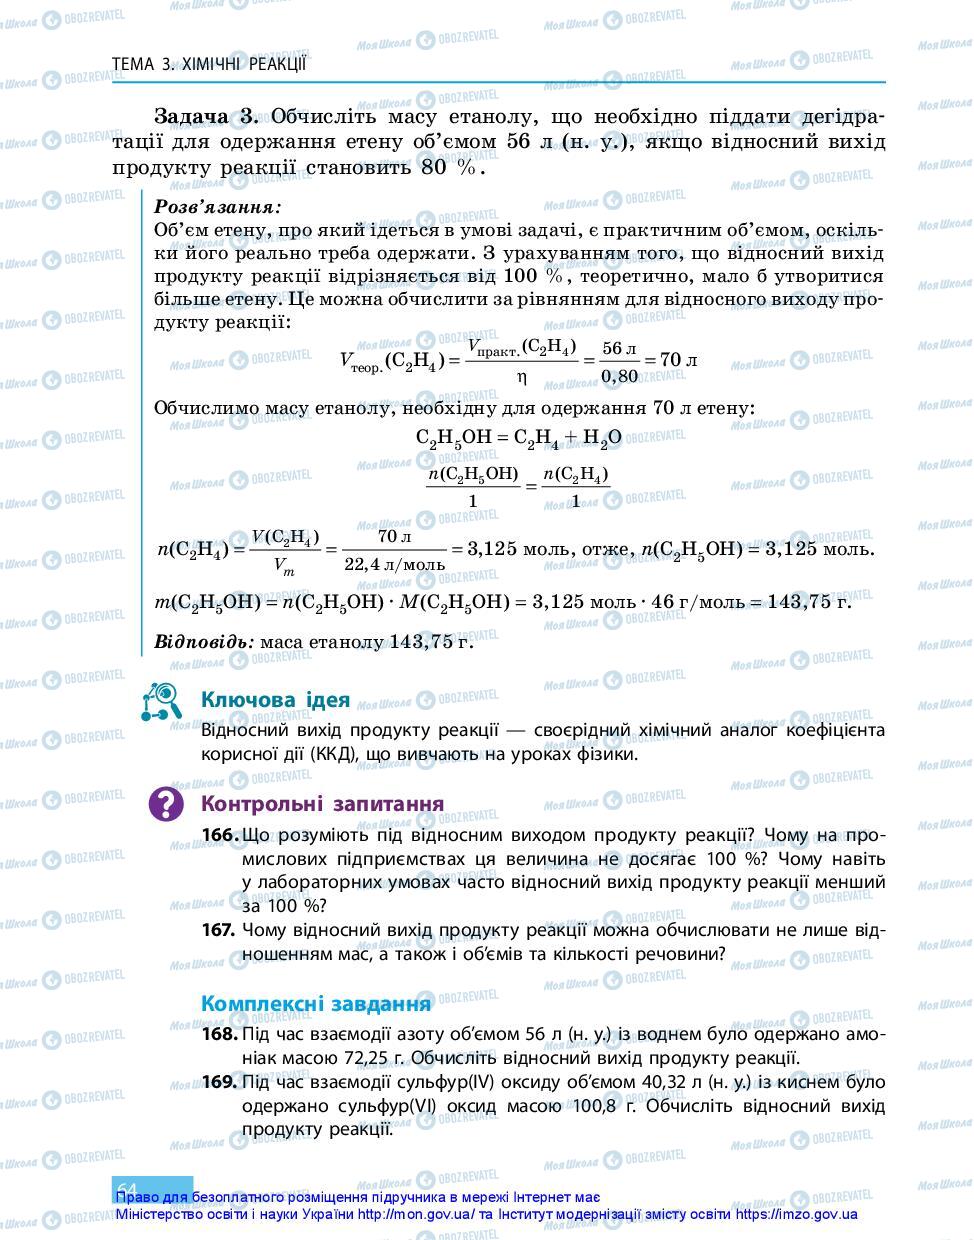 Підручники Хімія 11 клас сторінка 64